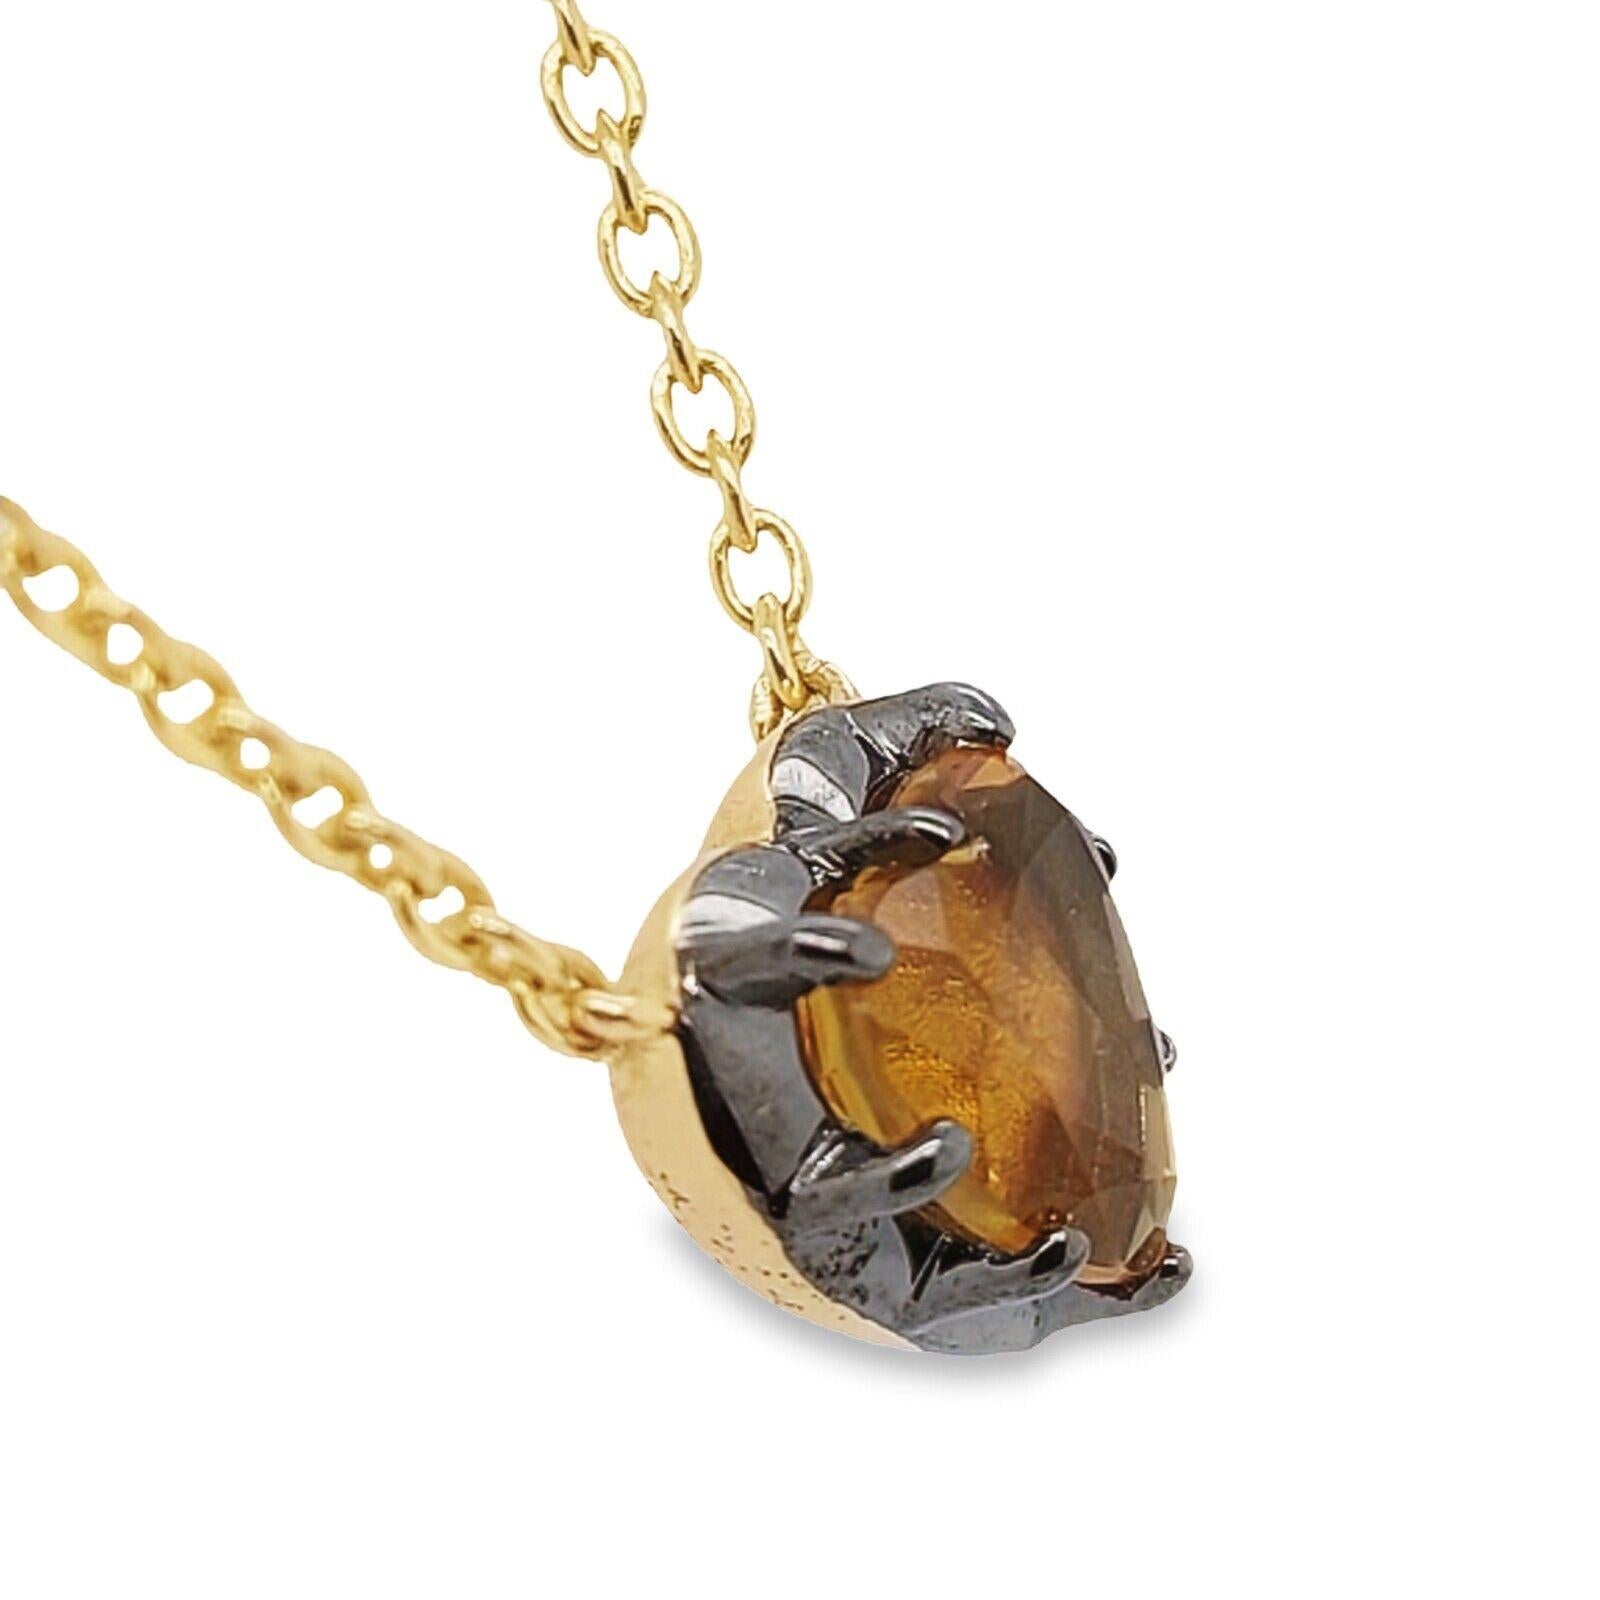 Made by Jewellery Cave - wir präsentieren den Inbegriff von Eleganz und Luxus - unsere atemberaubende Herz-Halskette aus 2,5 Karat goldenem Citrin in 14 Karat Gelbgold an einer 16/18 Zoll langen Kette aus 14 Karat Gelbgold.

Zusätzliche